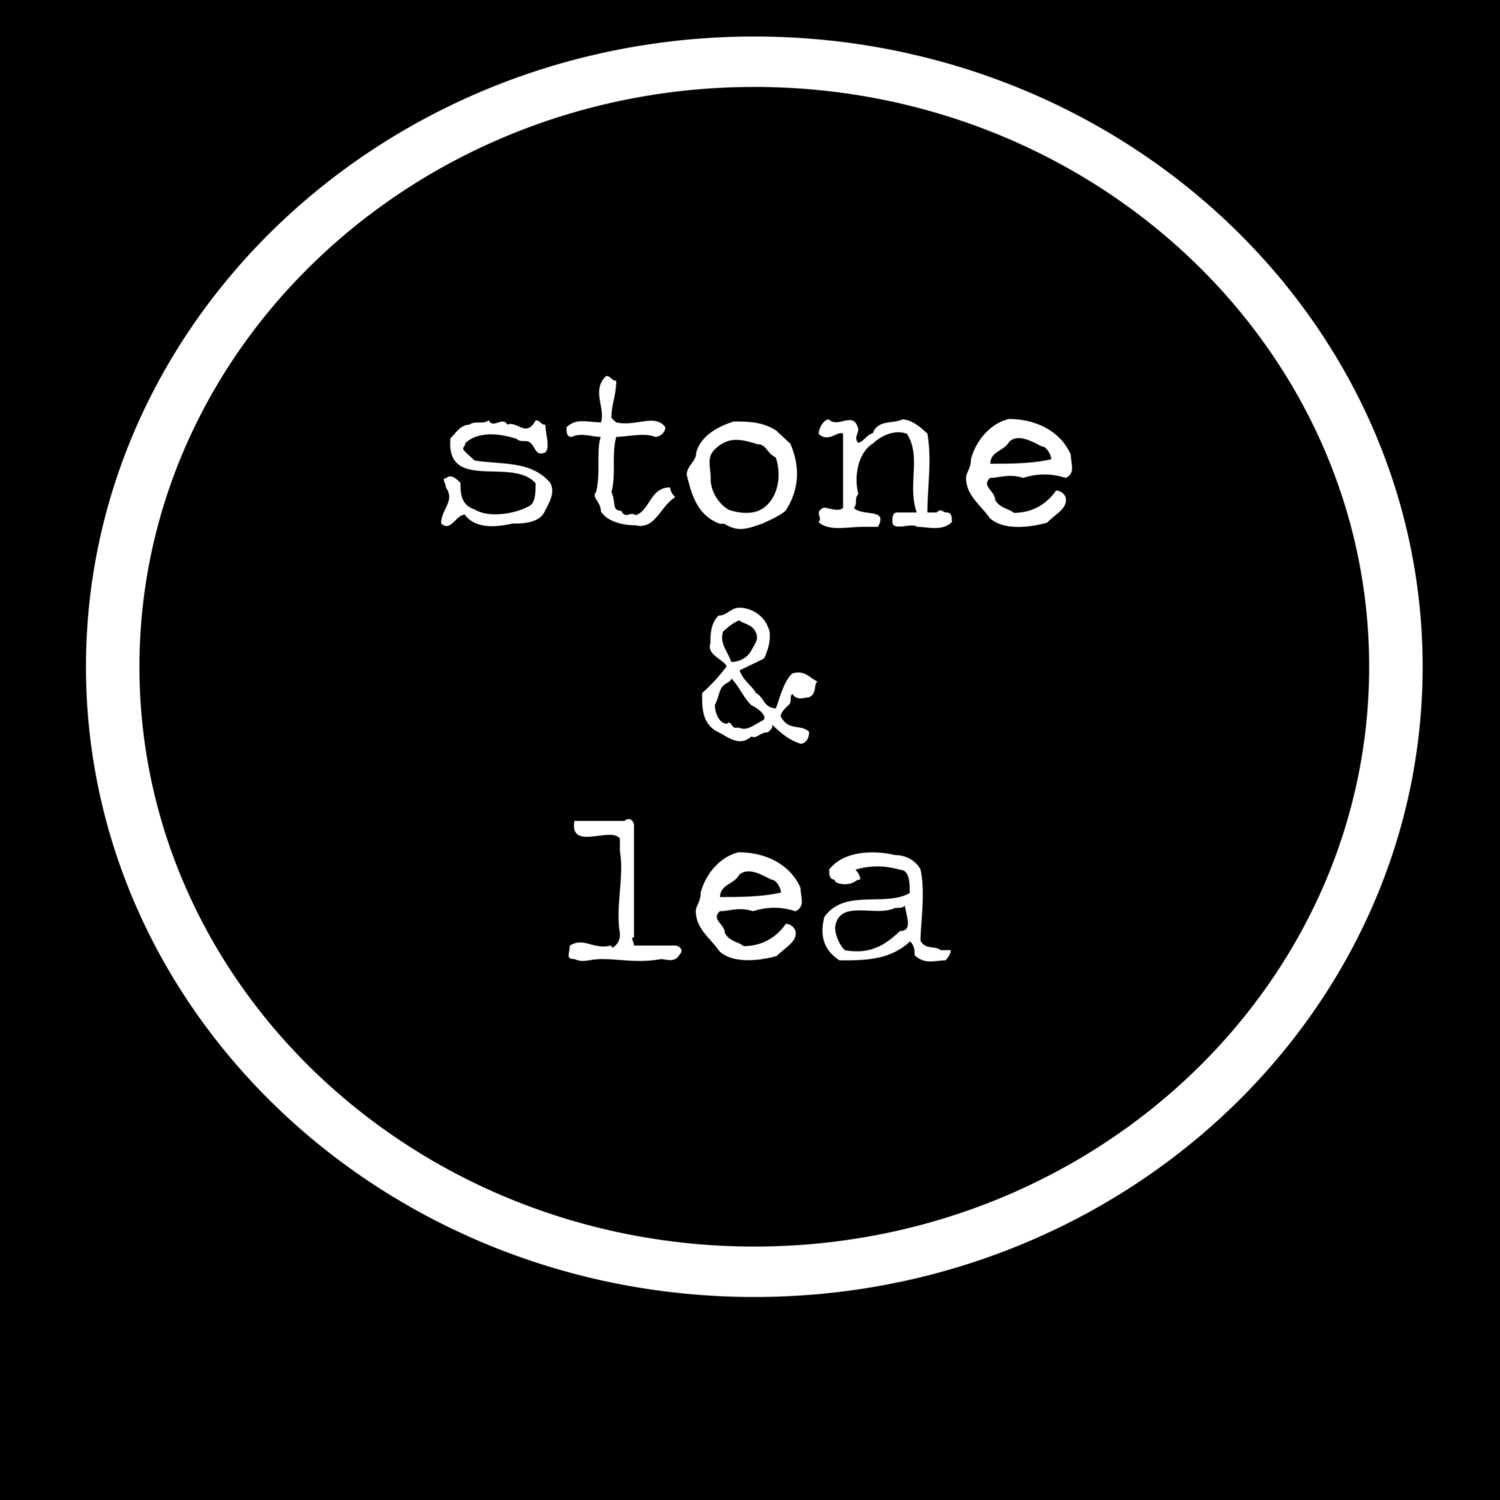 Stone & Lea